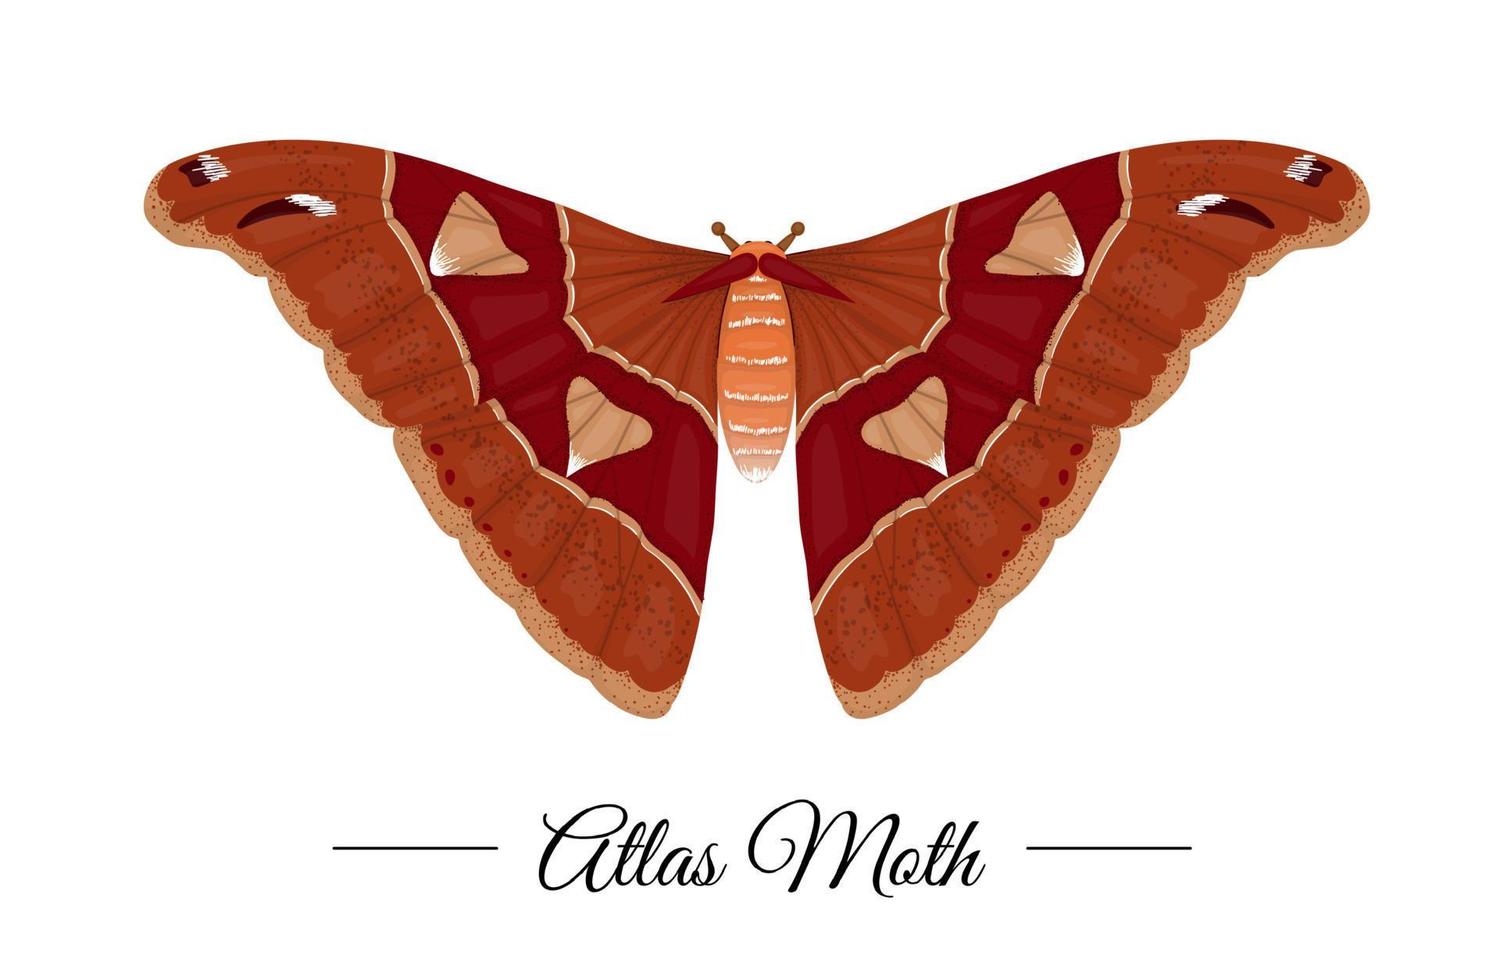 Vektor handgezeichnete farbige tropische Atlasmotte isoliert auf weißem Hintergrund. Tropisches themenorientiertes Logo für natürliches Design. Schmetterling Abbildung.